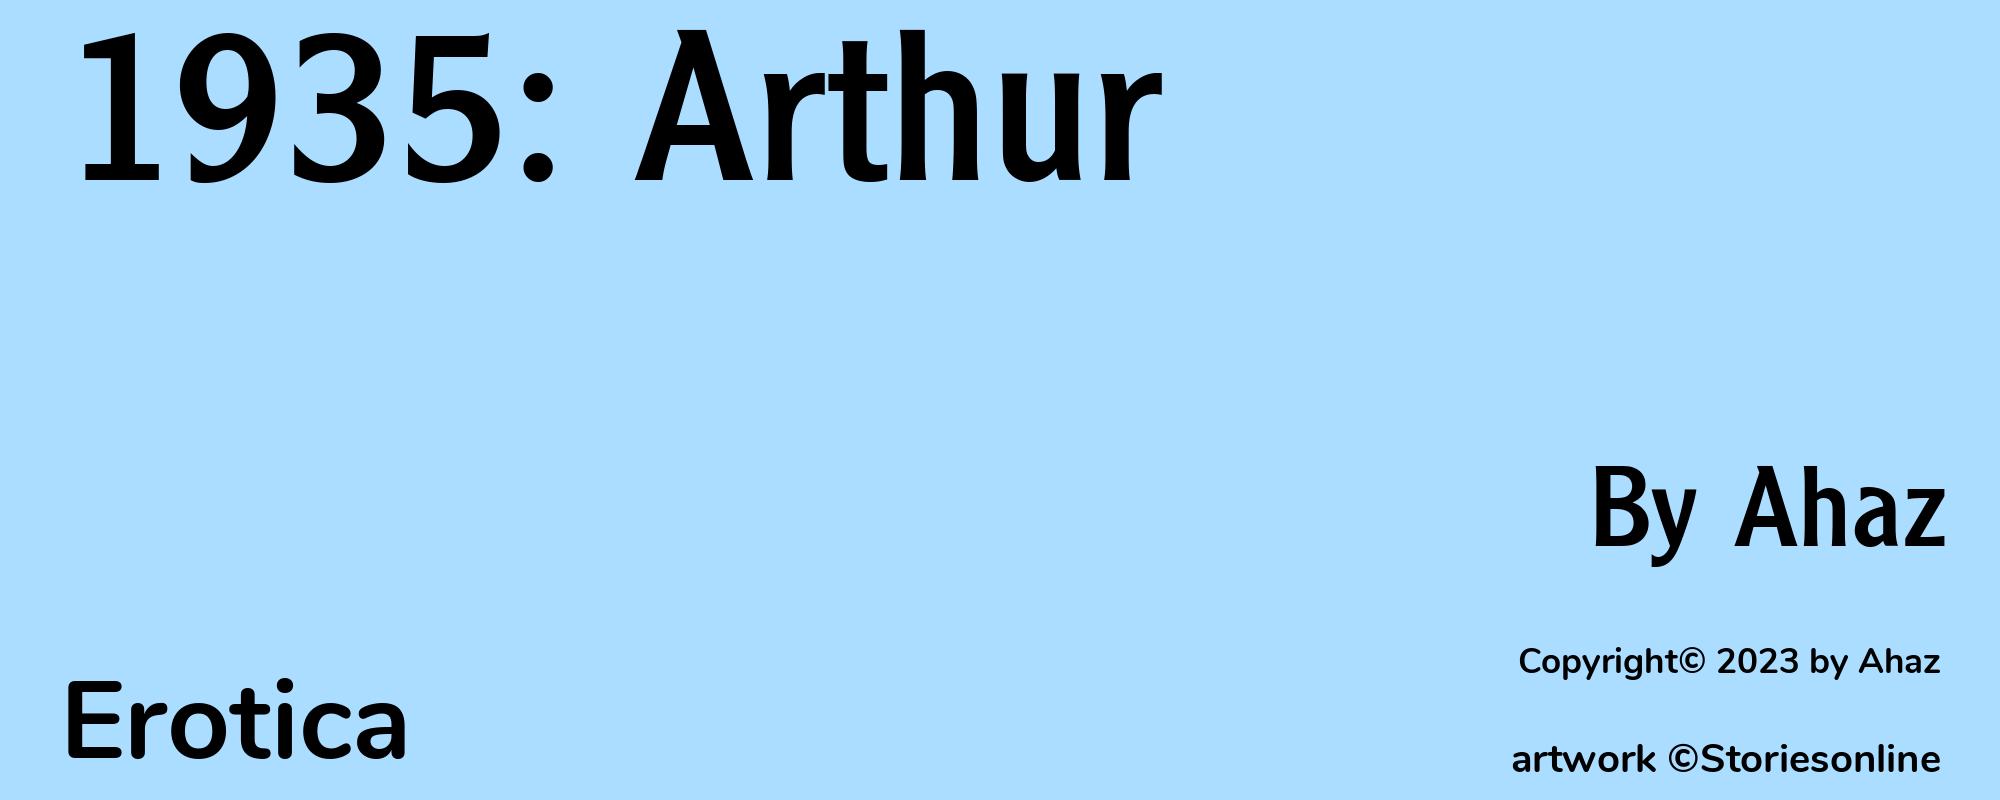 1935: Arthur - Cover